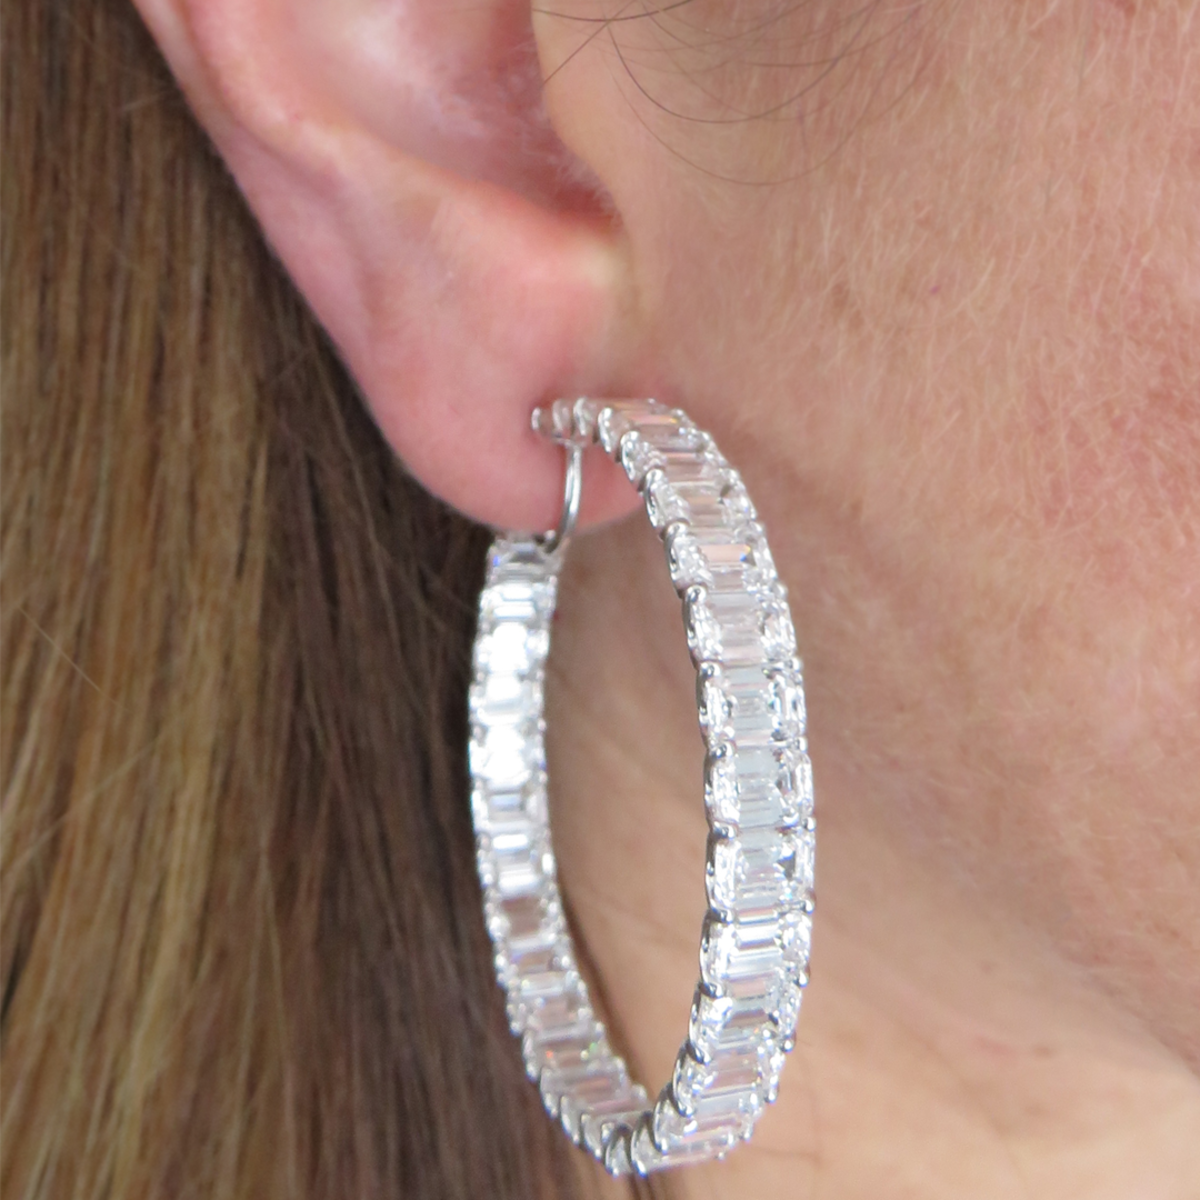 Post-1980s Platinum Diamond In/Out Hoop Earrings worn on ear